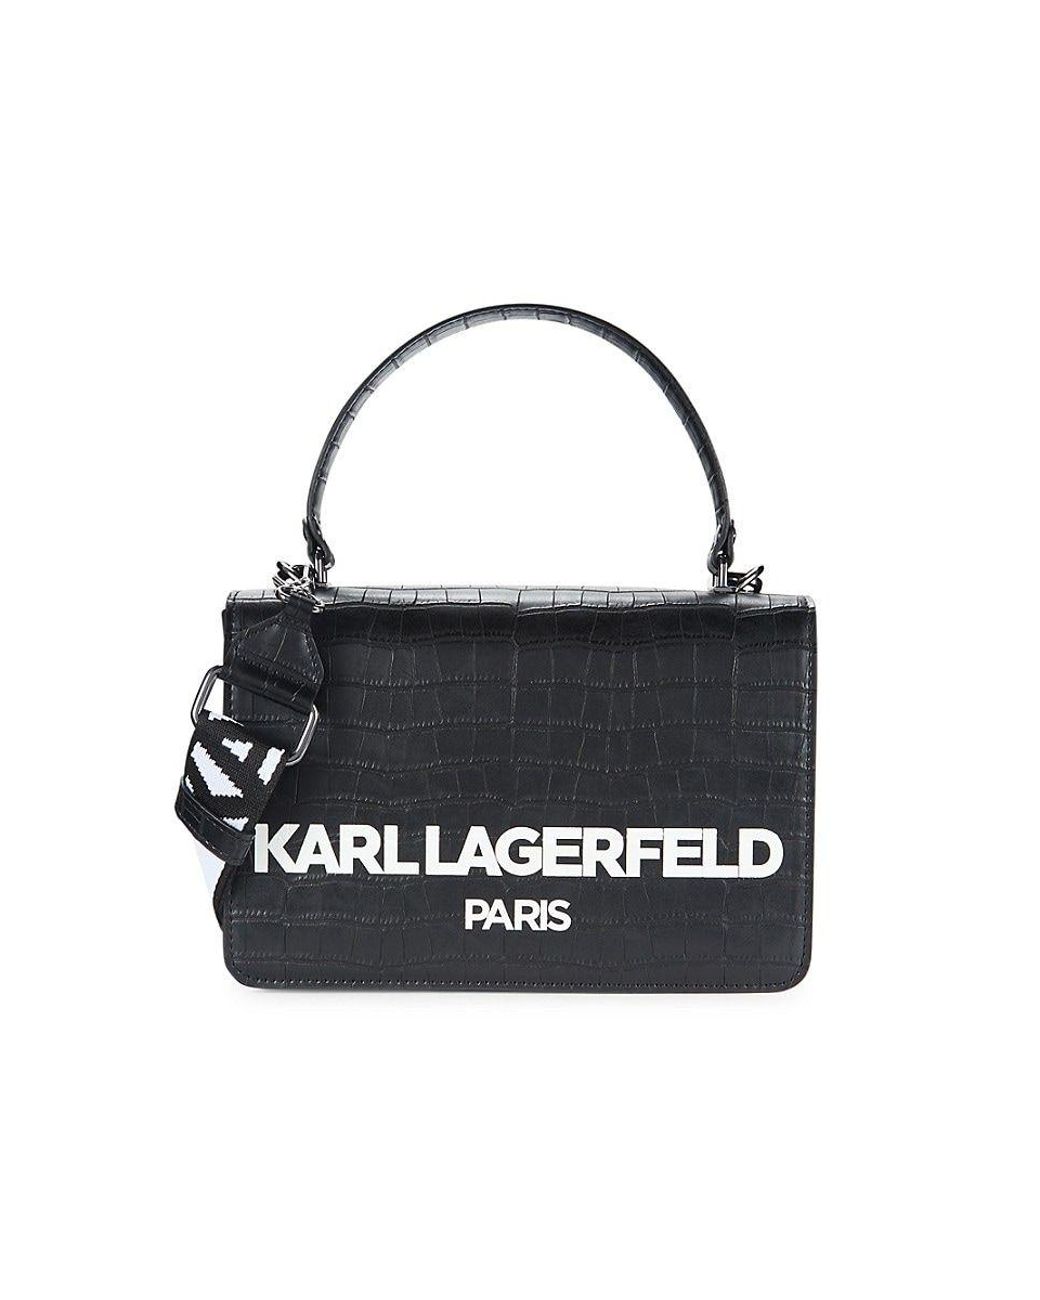 Karl Lagerfeld Simone Croc-embossed Satchel in Black | Lyst